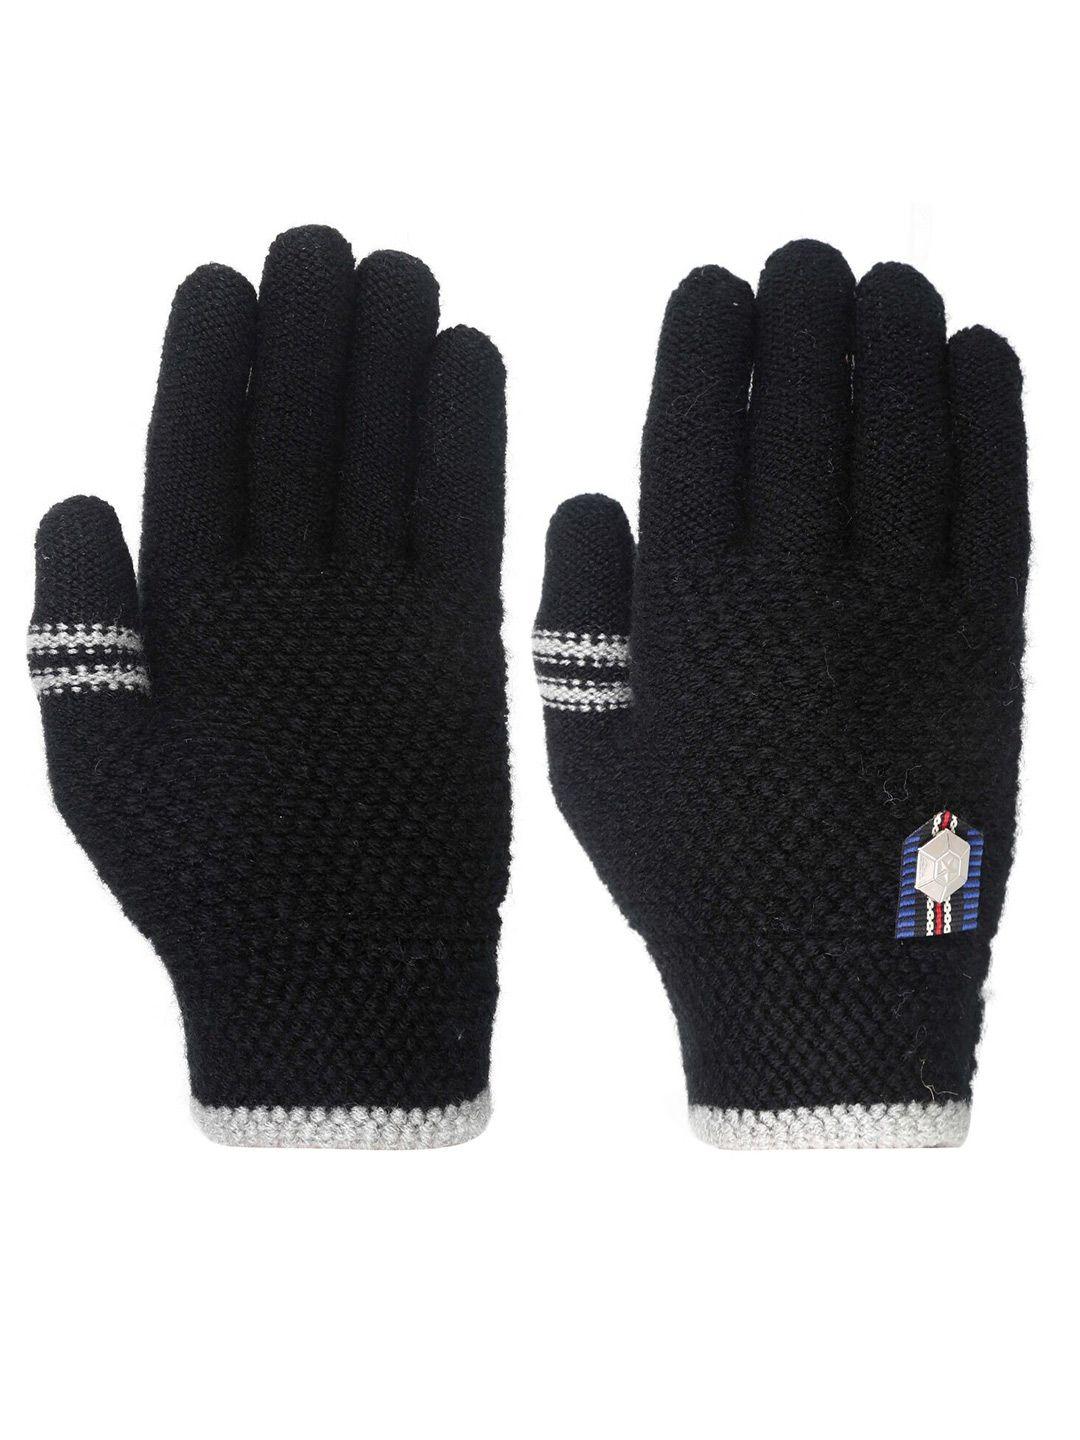 fabseasons kids acrylic woolen winter gloves